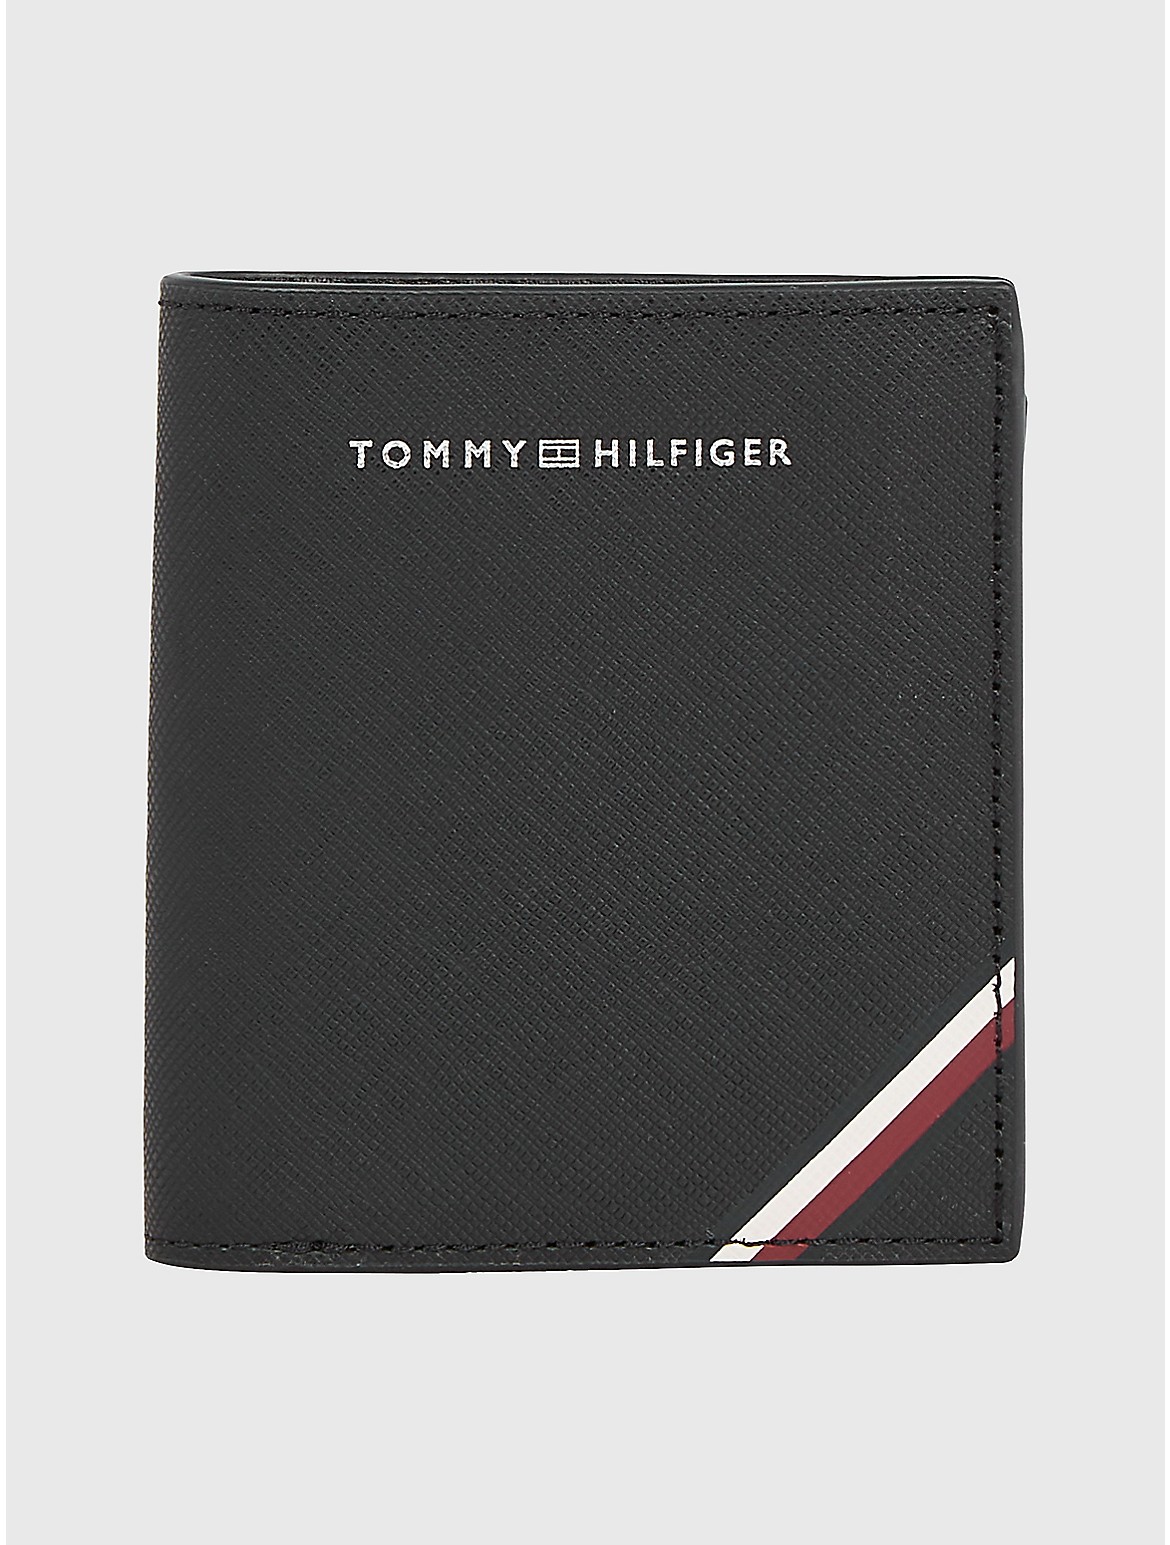 Tommy Hilfiger Men's Stripe Leather Trifold Wallet - Black